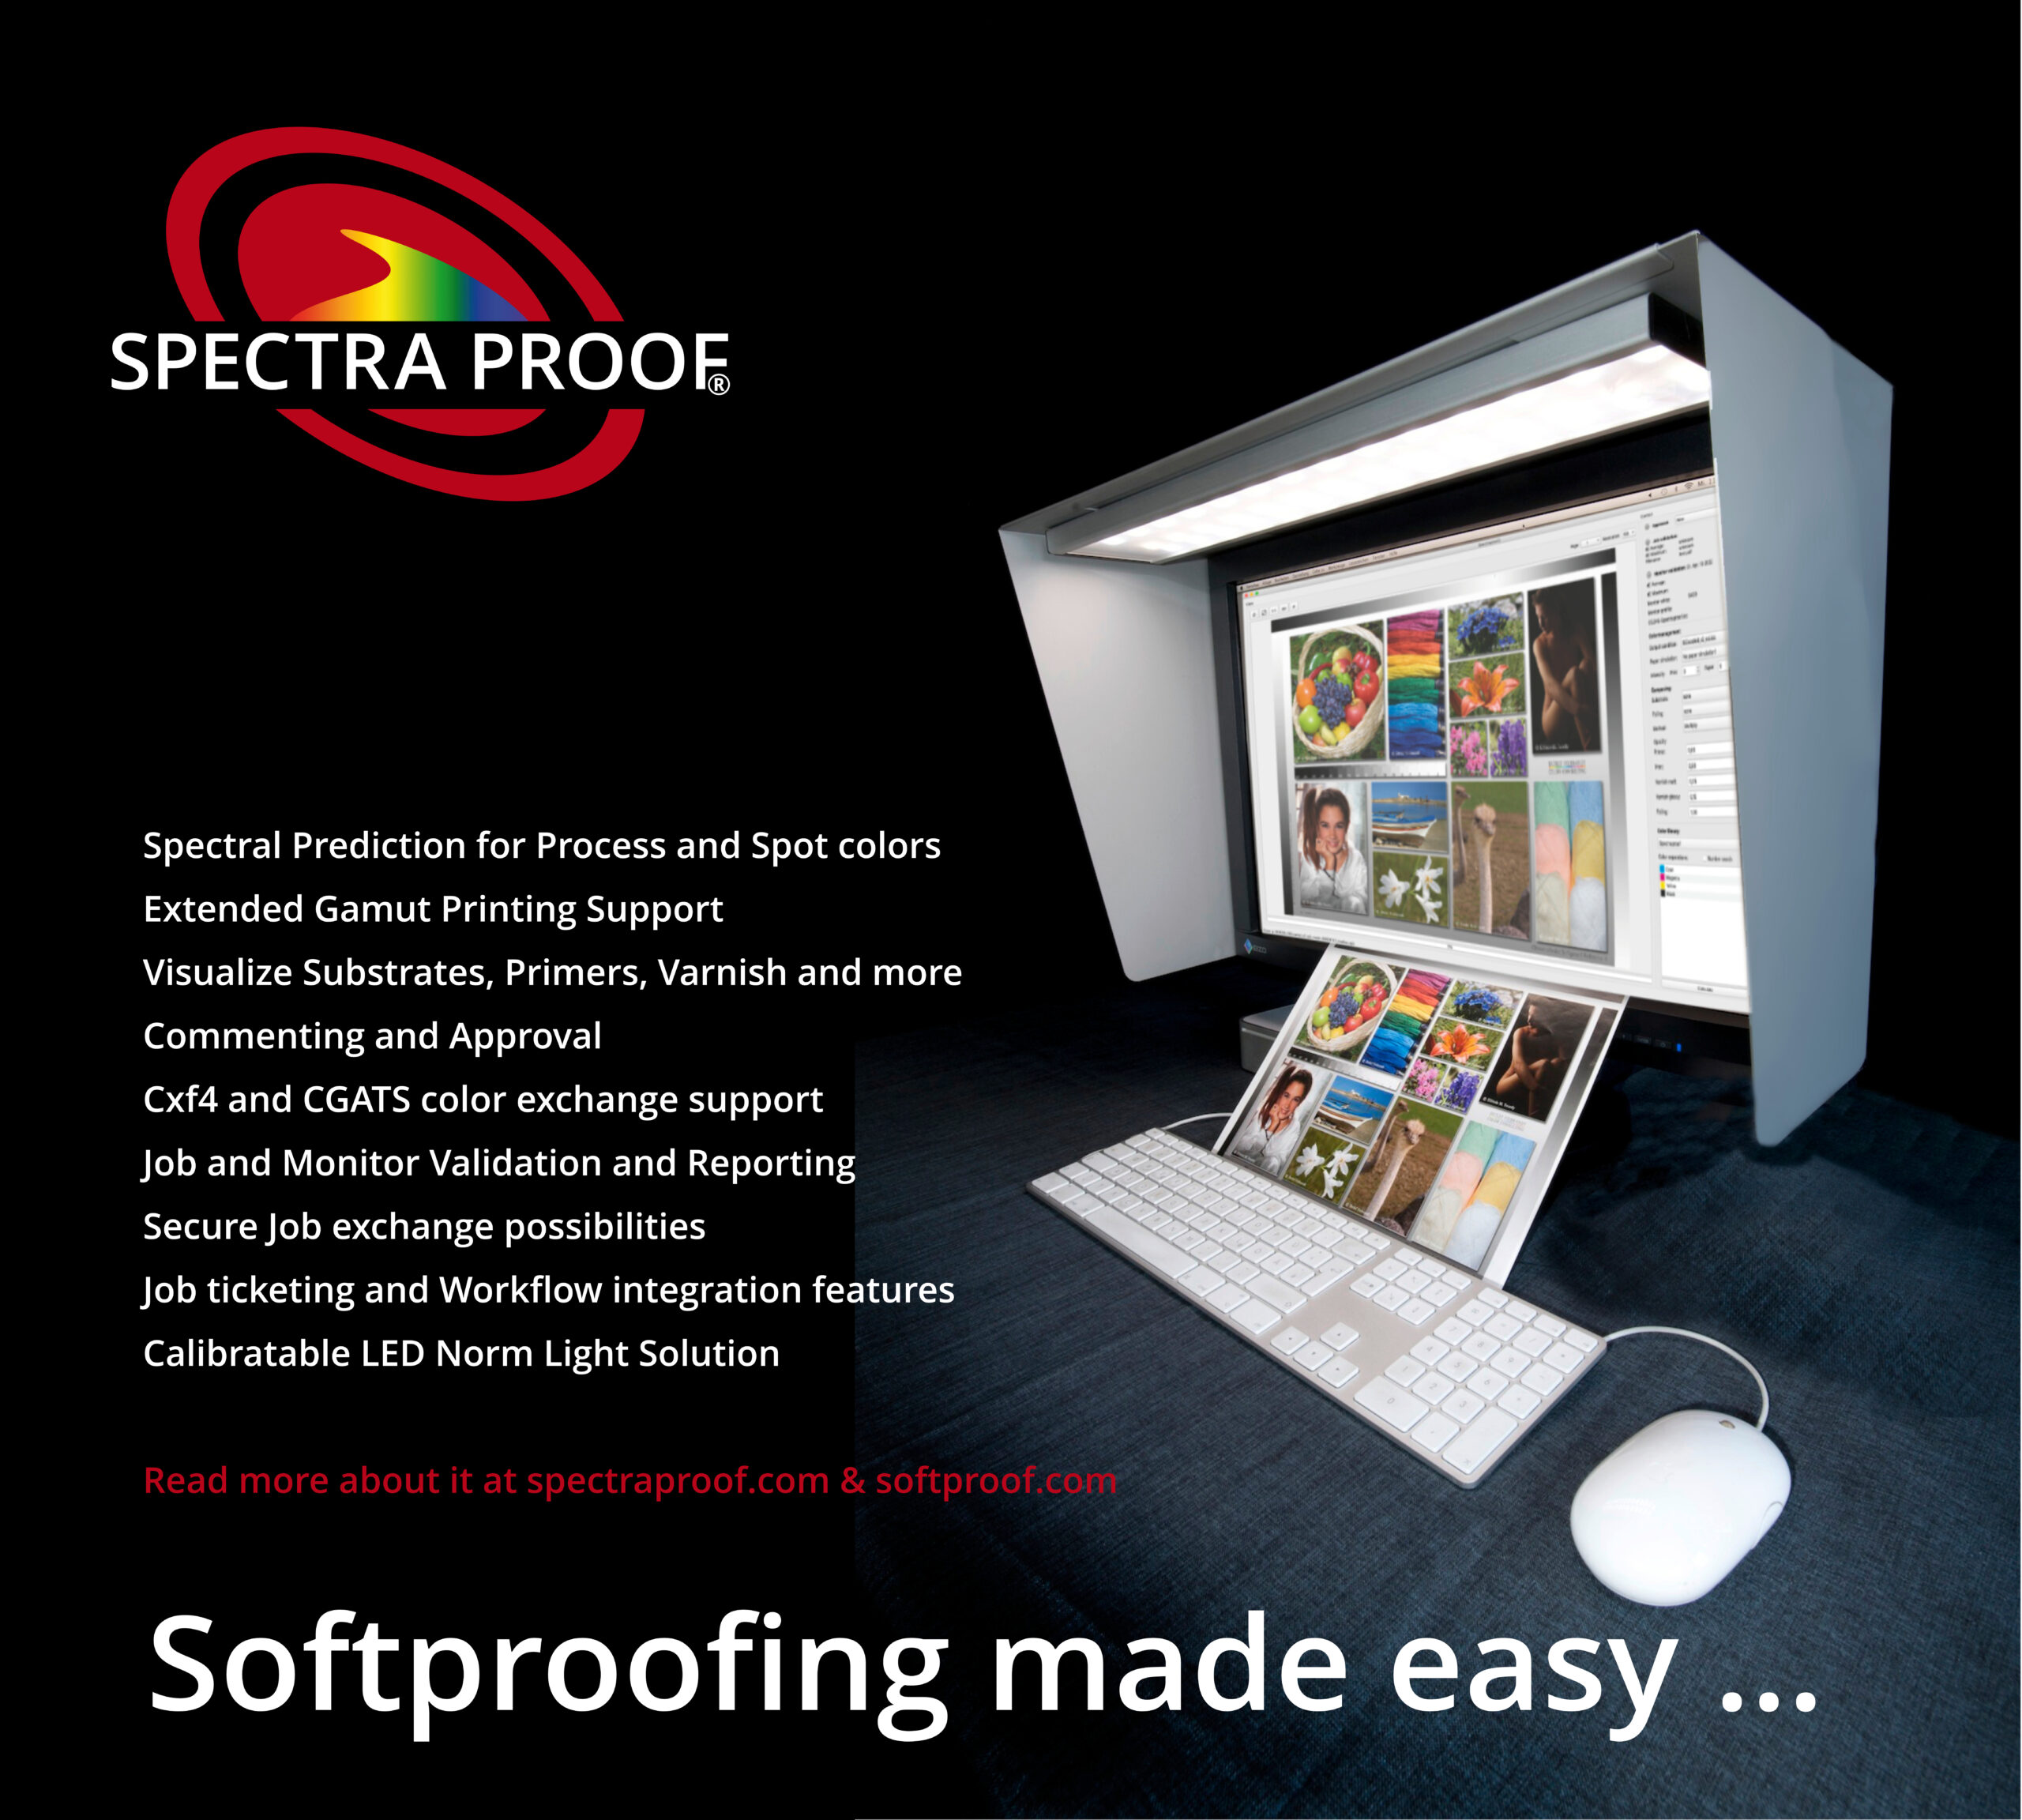 Spectraproof Softproof Oplossing met Spectralight, Kap, Softproof Monitor: Nauwkeurige Spectrale Voorspelling voor proces- en steunkleuren